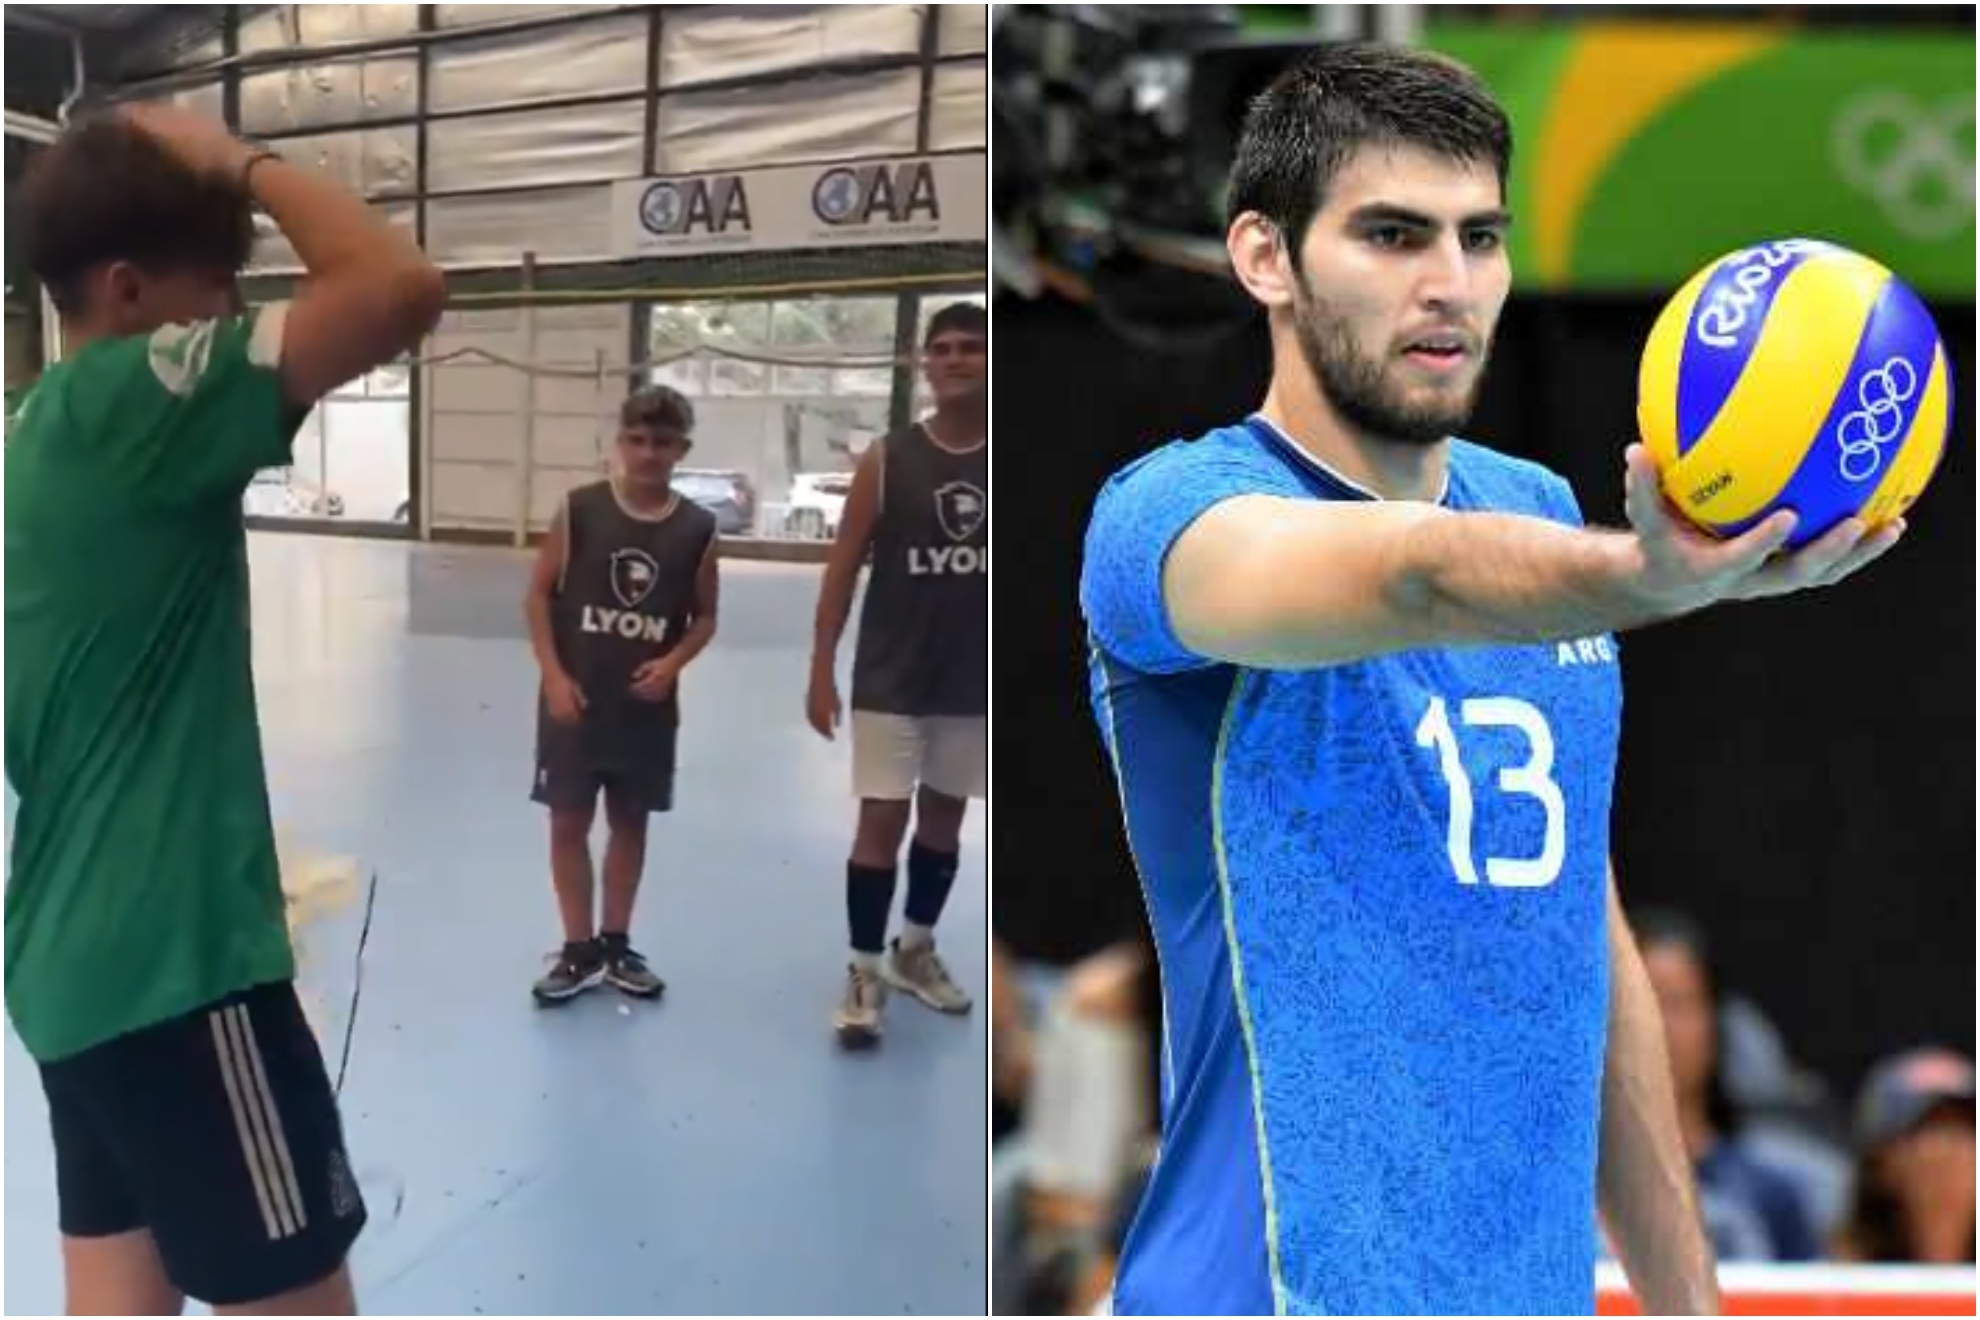 La sorpresa viral de un medallista olmpico al voleibolista de 14 aos al que haban robado sus zapatillas